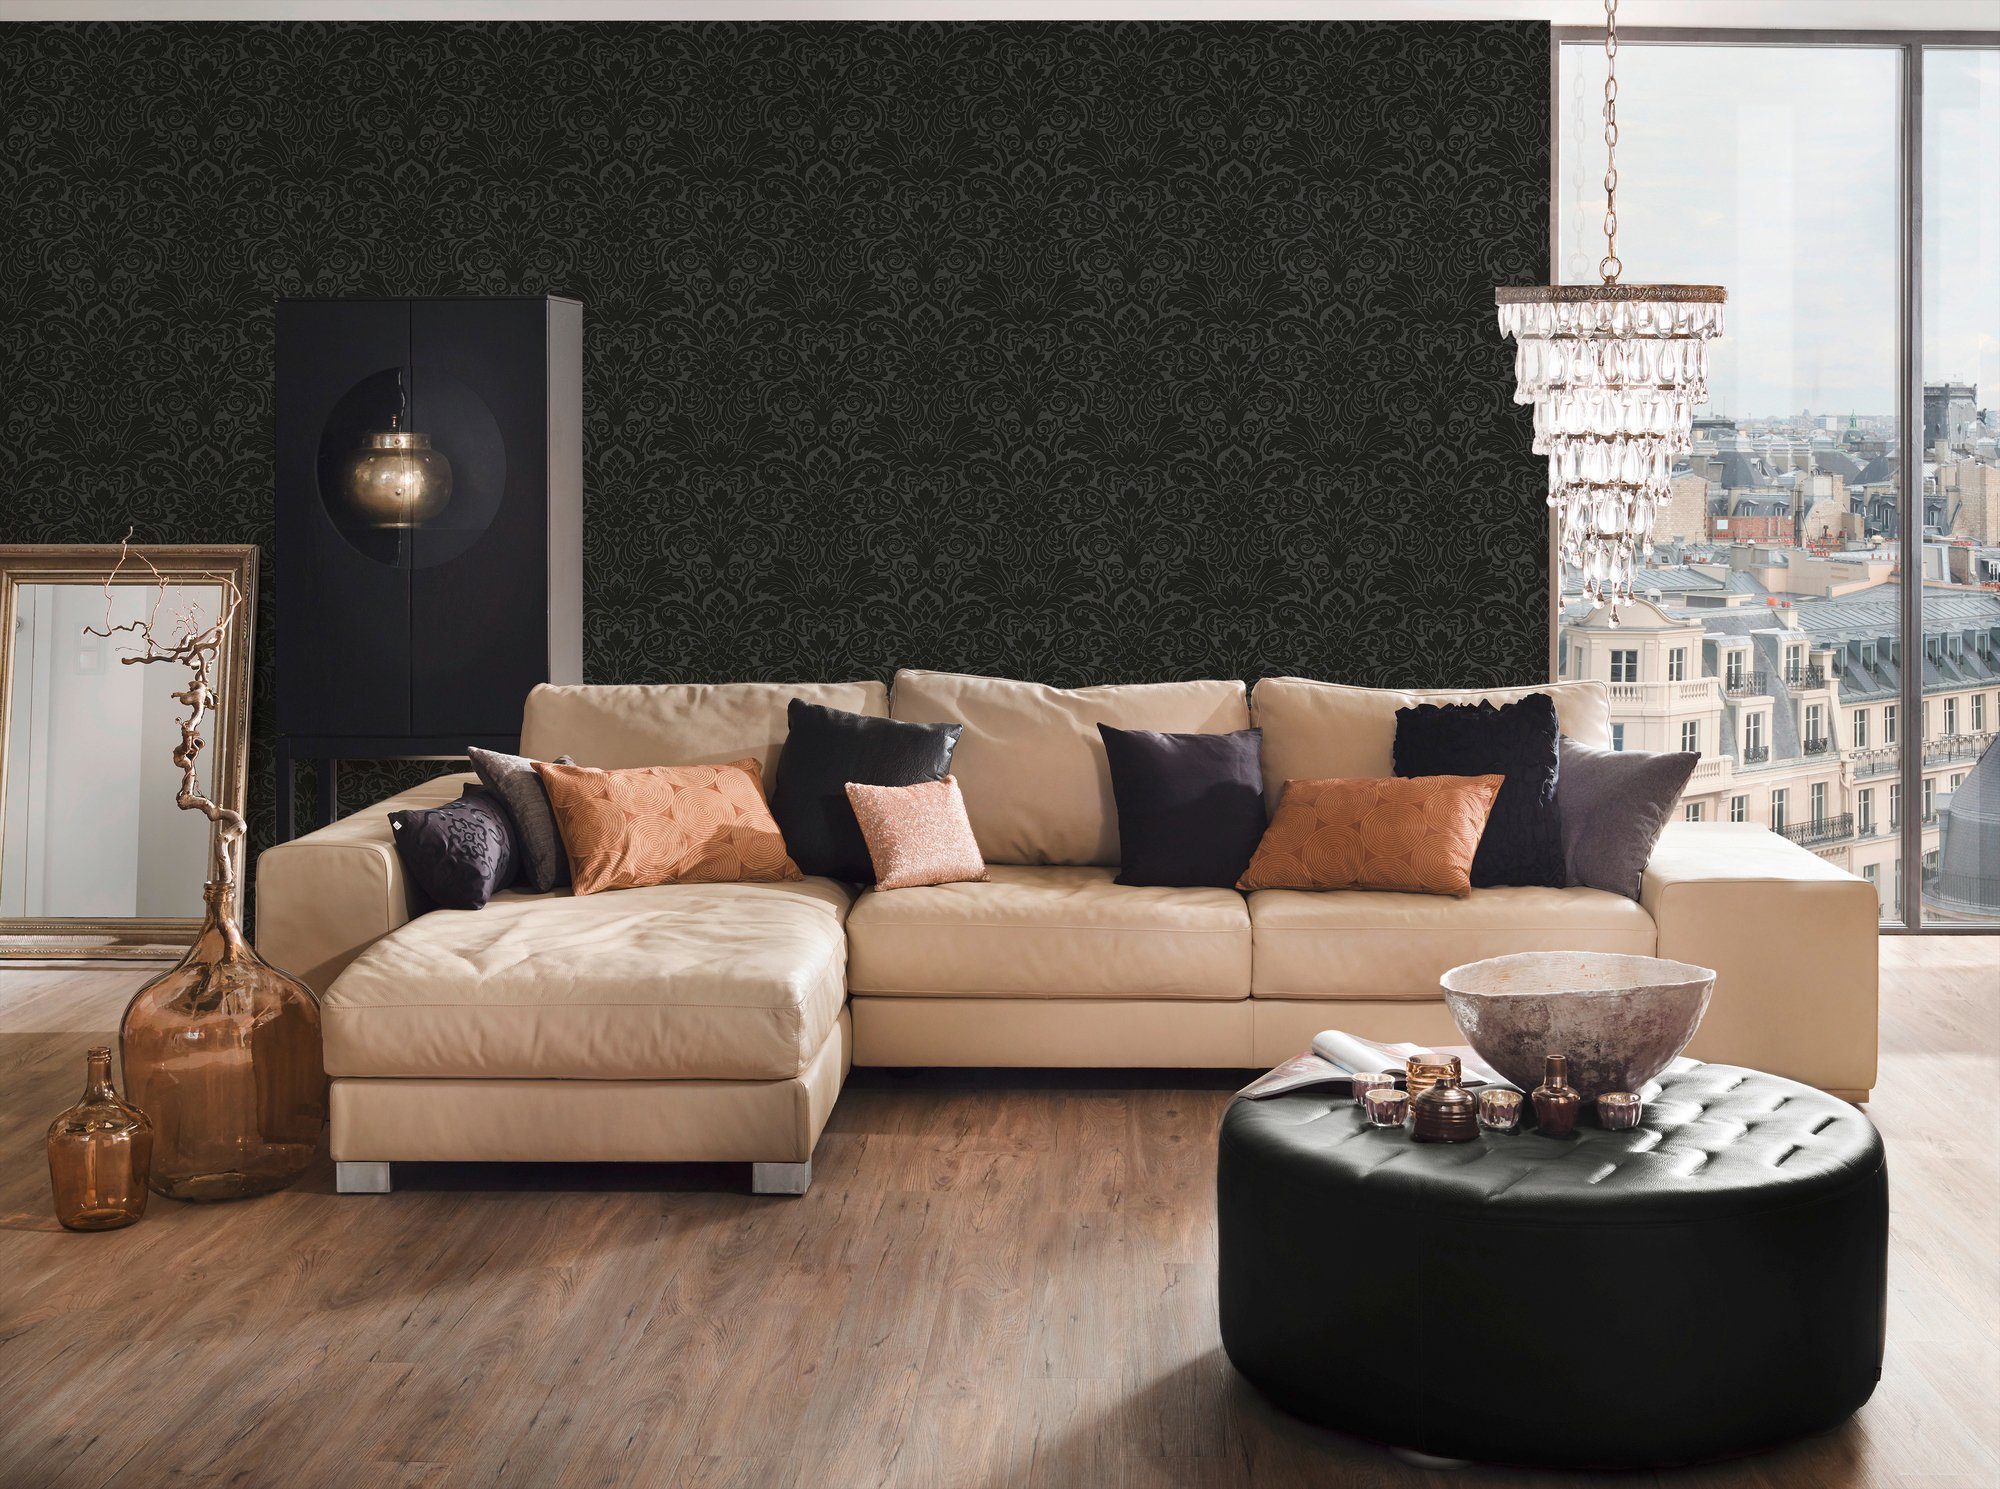 Architects Paper Vliestapete Luxury wallpaper, Barock Tapete silberfarben/schwarz Barock, strukturiert, Ornament